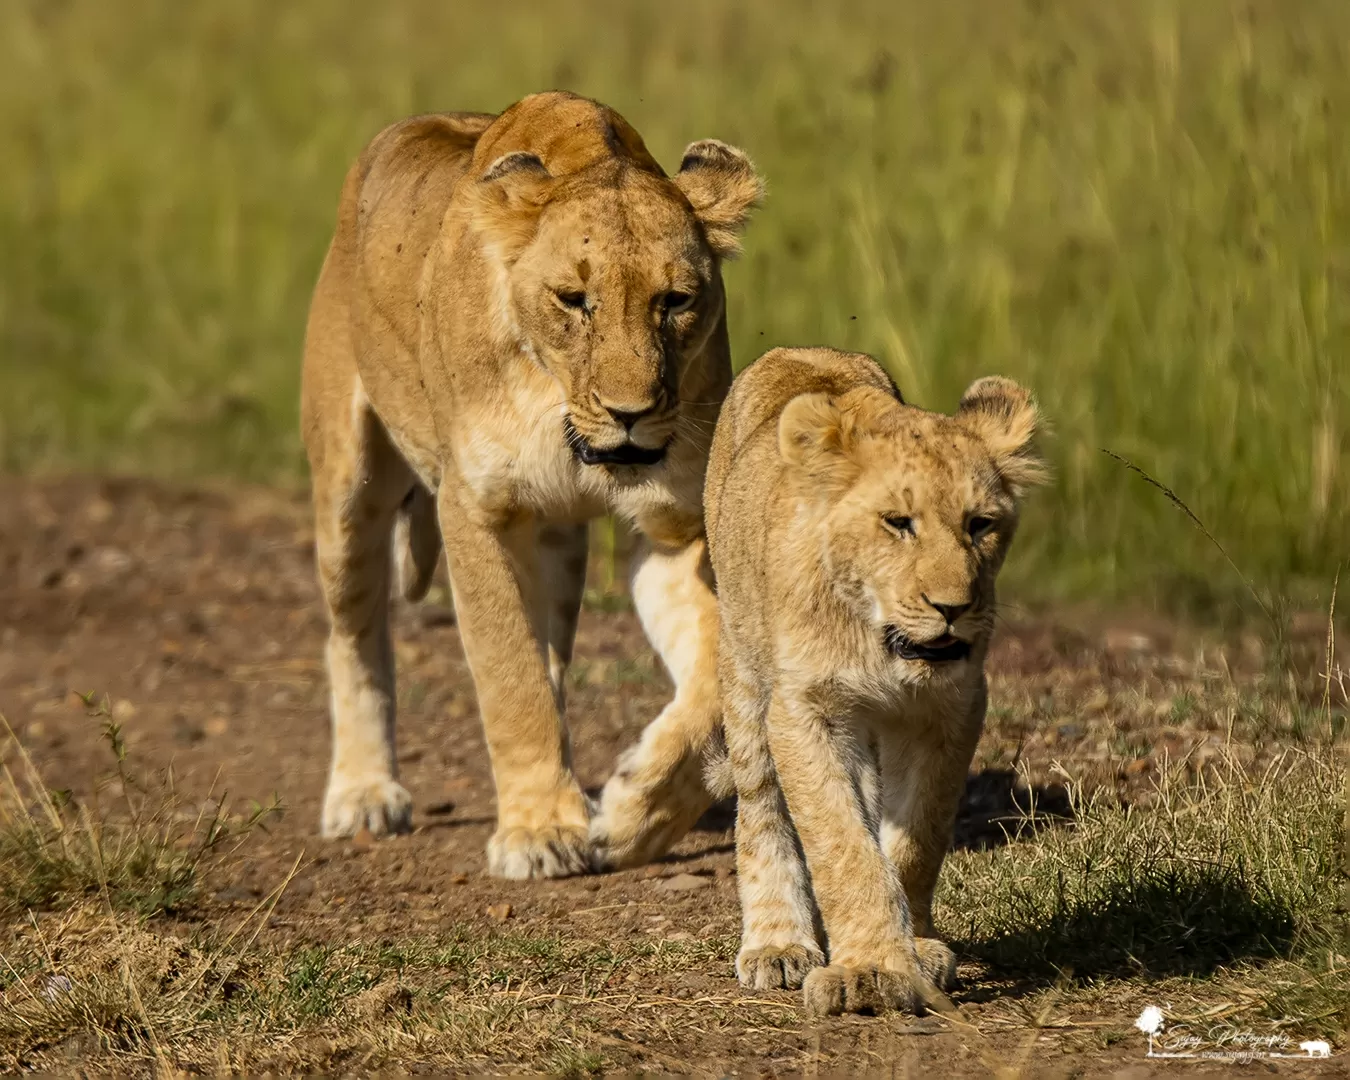 Photo of Masai Mara National Reserve By Sujay Jamkhandi